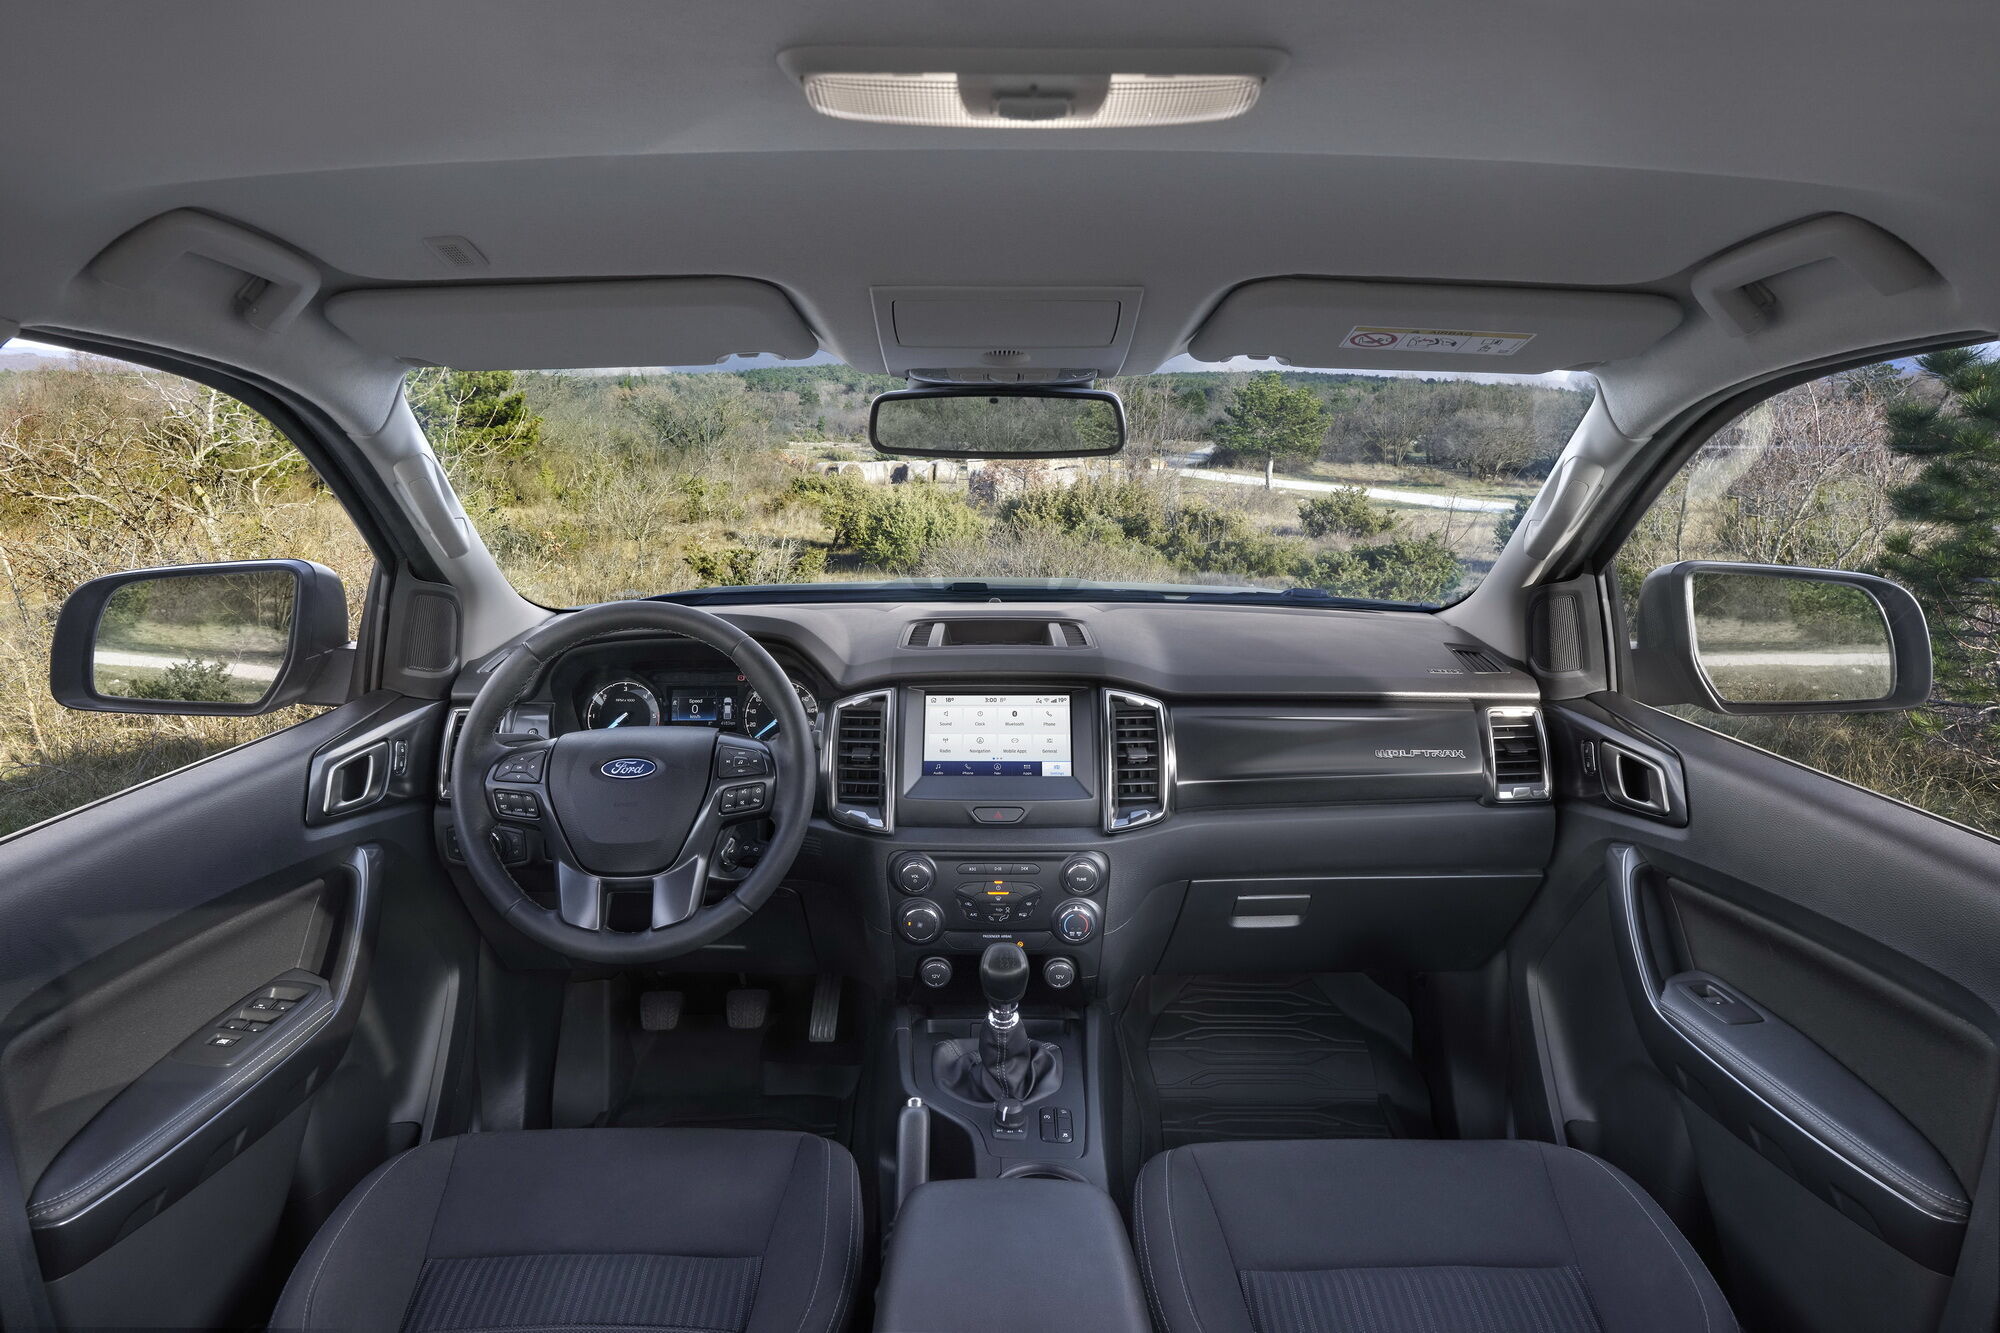 Інформаційно-навігаційна система Ford SYNC 3 із сенсорним екраном діагоналлю 8 дюймів входить до базової комплектації